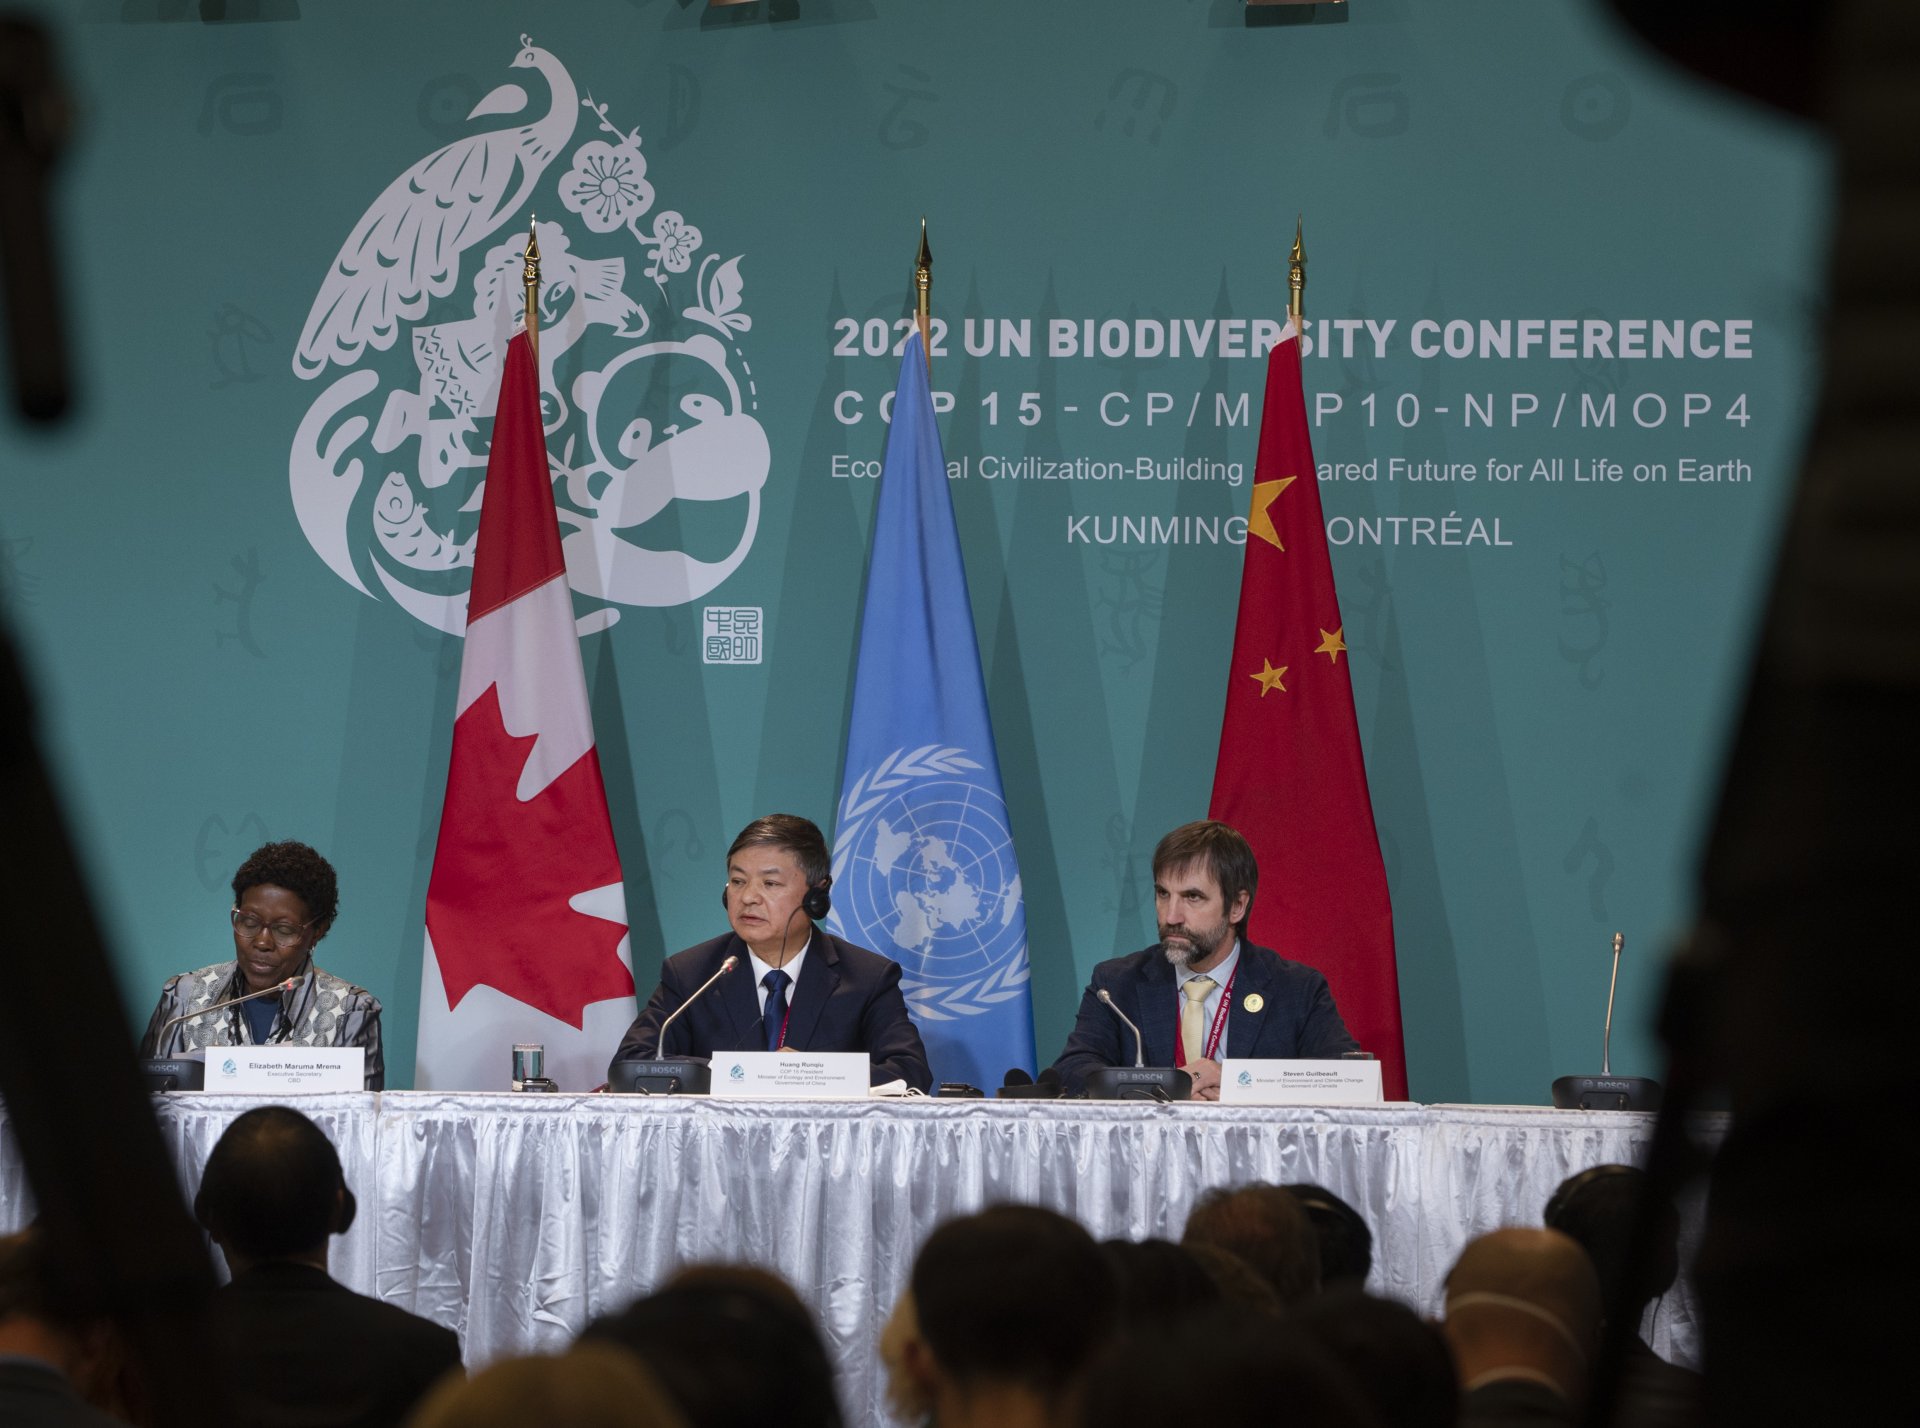 Елизабет Марума Мрема - изпълнителен секретар на секретариата на Конференцията по биологично разнообразие, и Хуанг Рункиу - президент на COP 15 и министър на екологията и околната среда на Китай, слушат Стивън Гилбо, министър на околната среда и изменението на климата на Канада, по време на пресконференция на срещата на високо равнище COP 15 в Монреал.